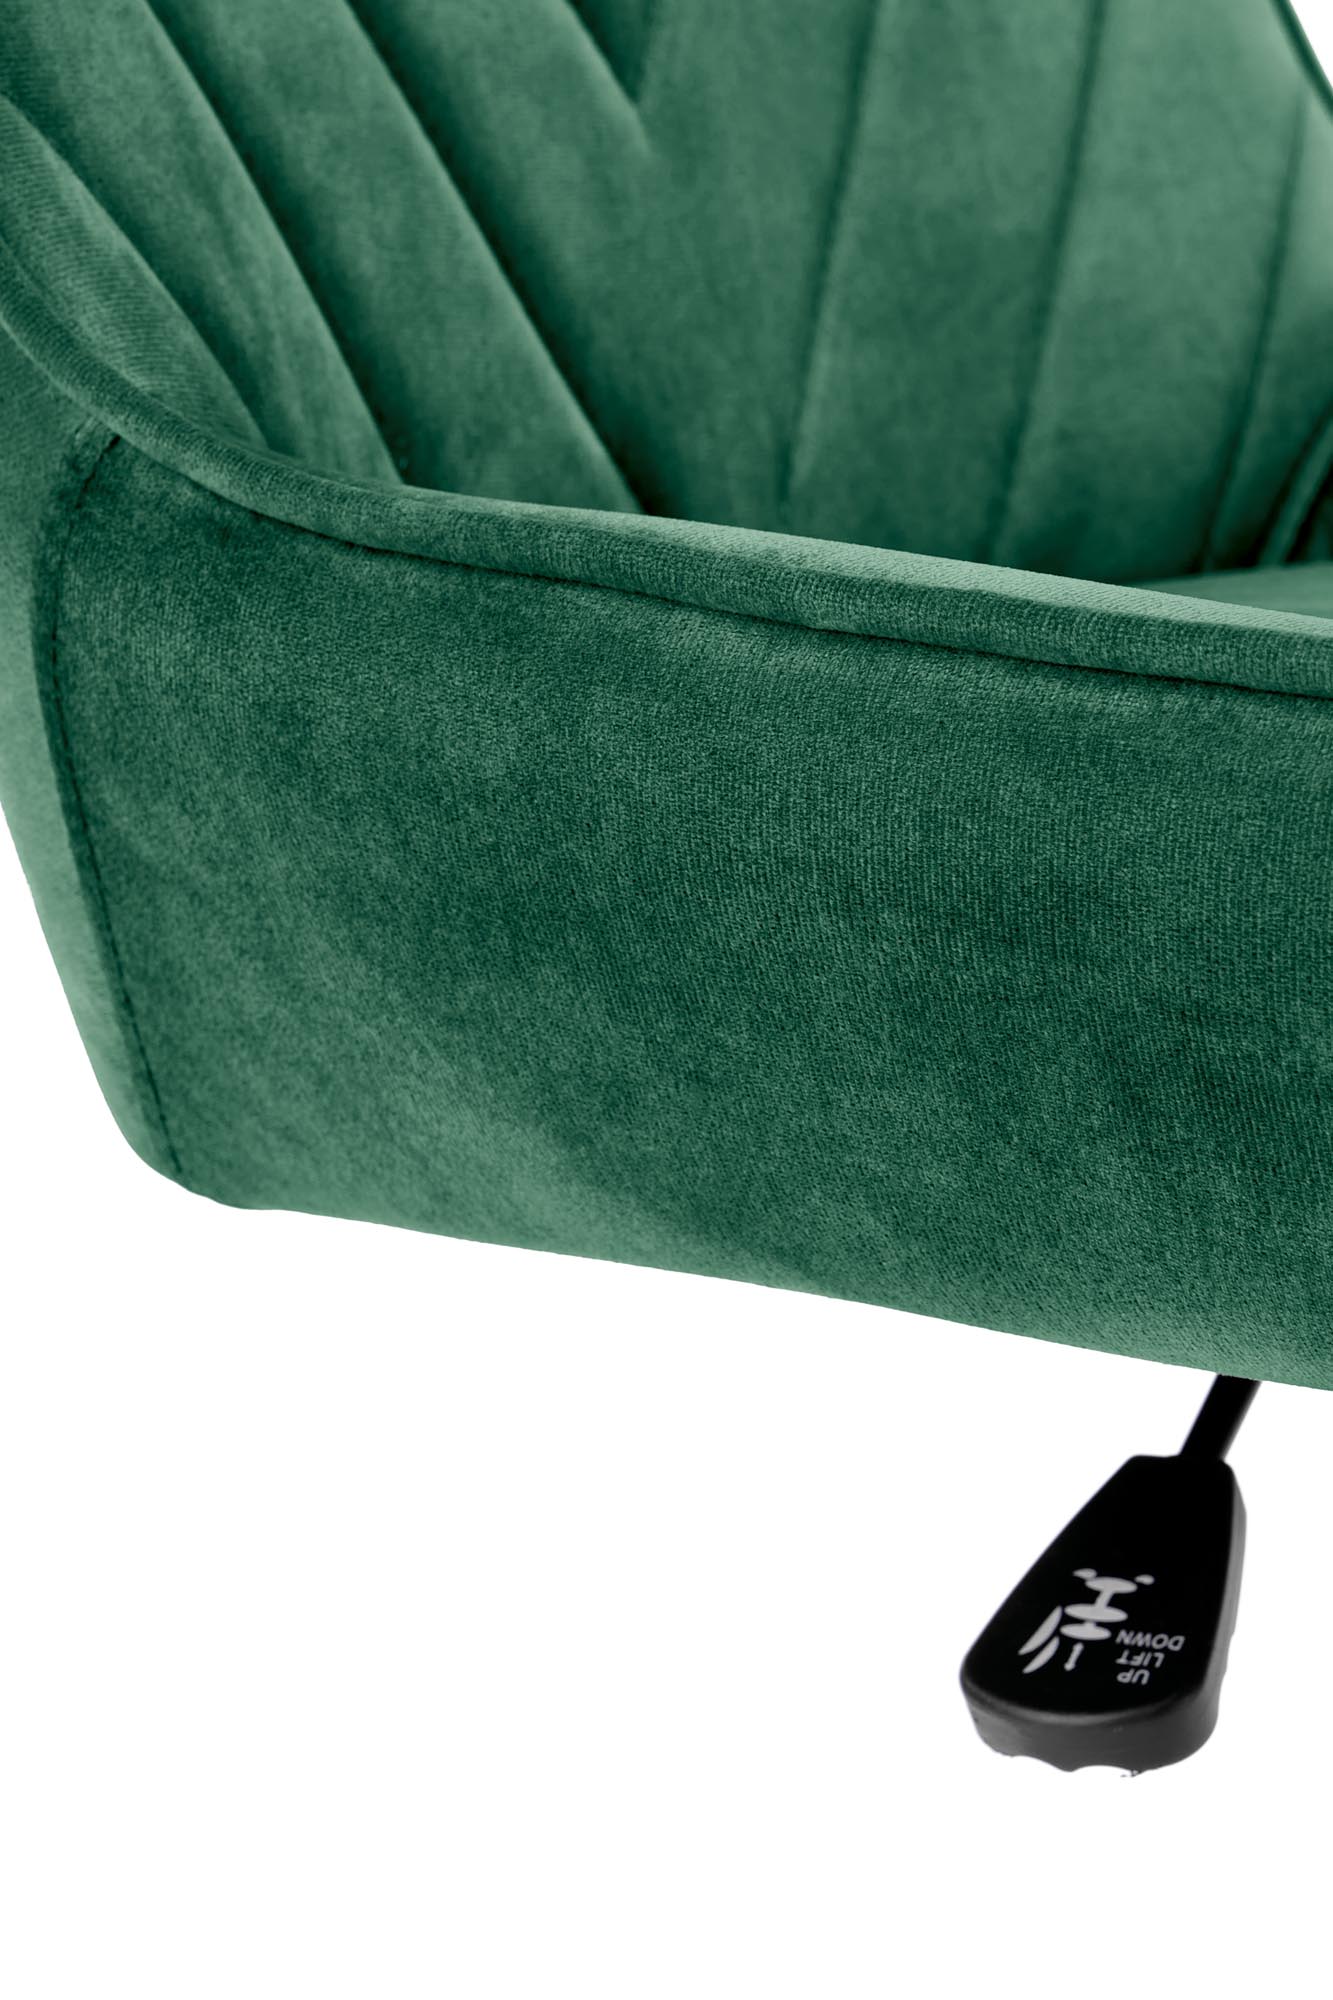 RICO fotel młodzieżowy ciemny zielony rico fotel młodzieżowy ciemny zielony